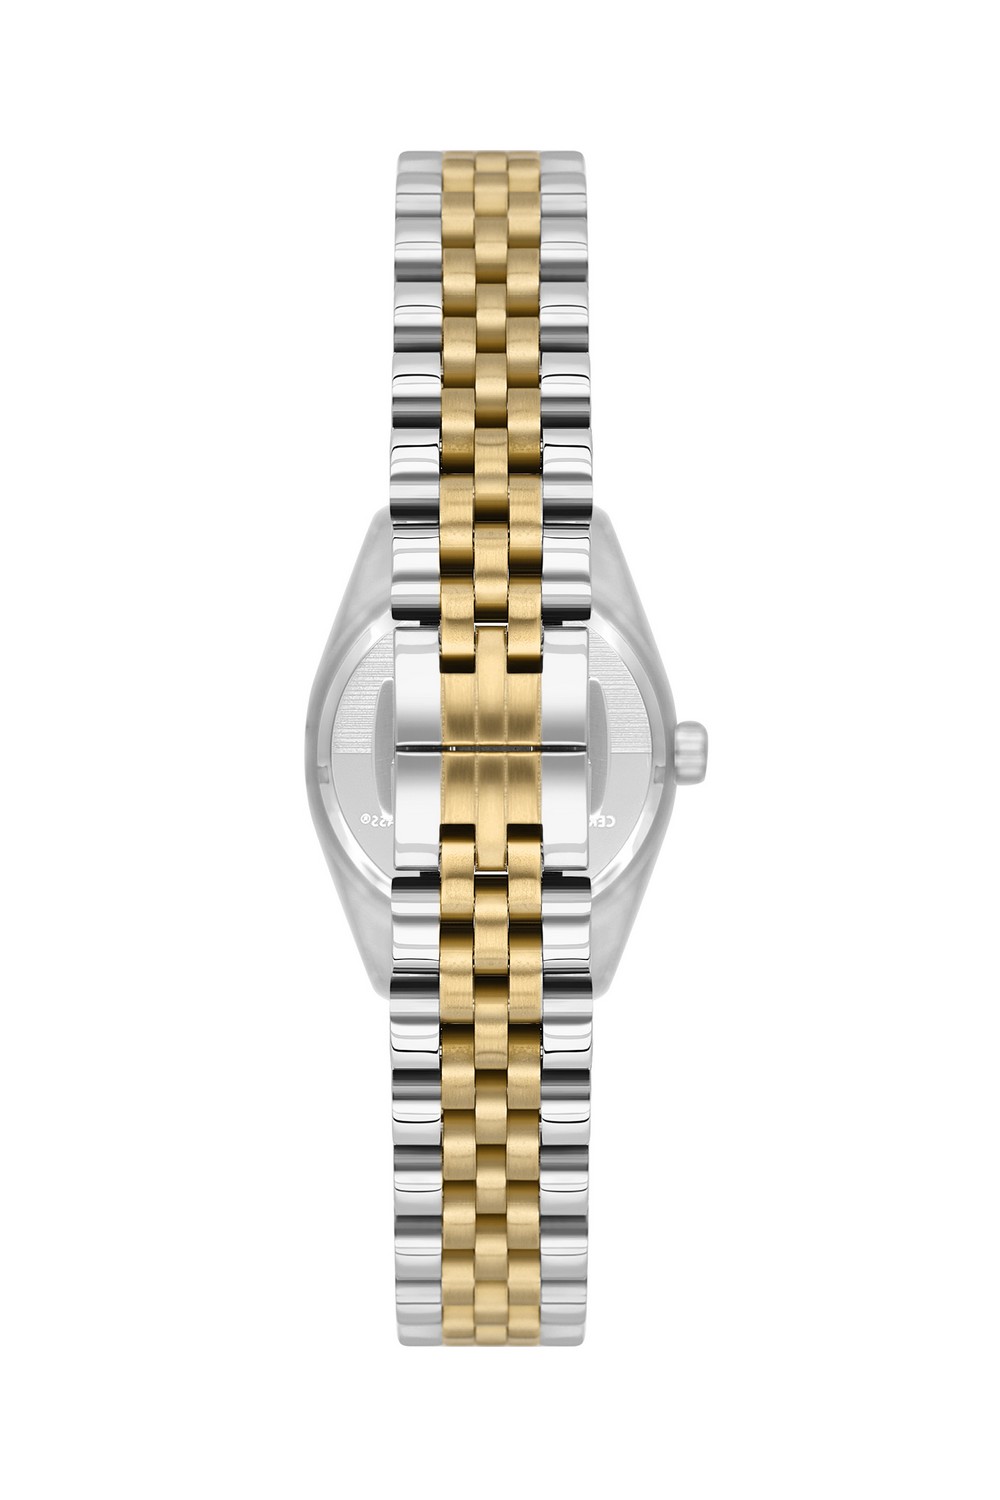 BEVERLY HILLS POLO CLUB  Женские часы, кварцевый механизм, сталь с покрытием, 28 мм